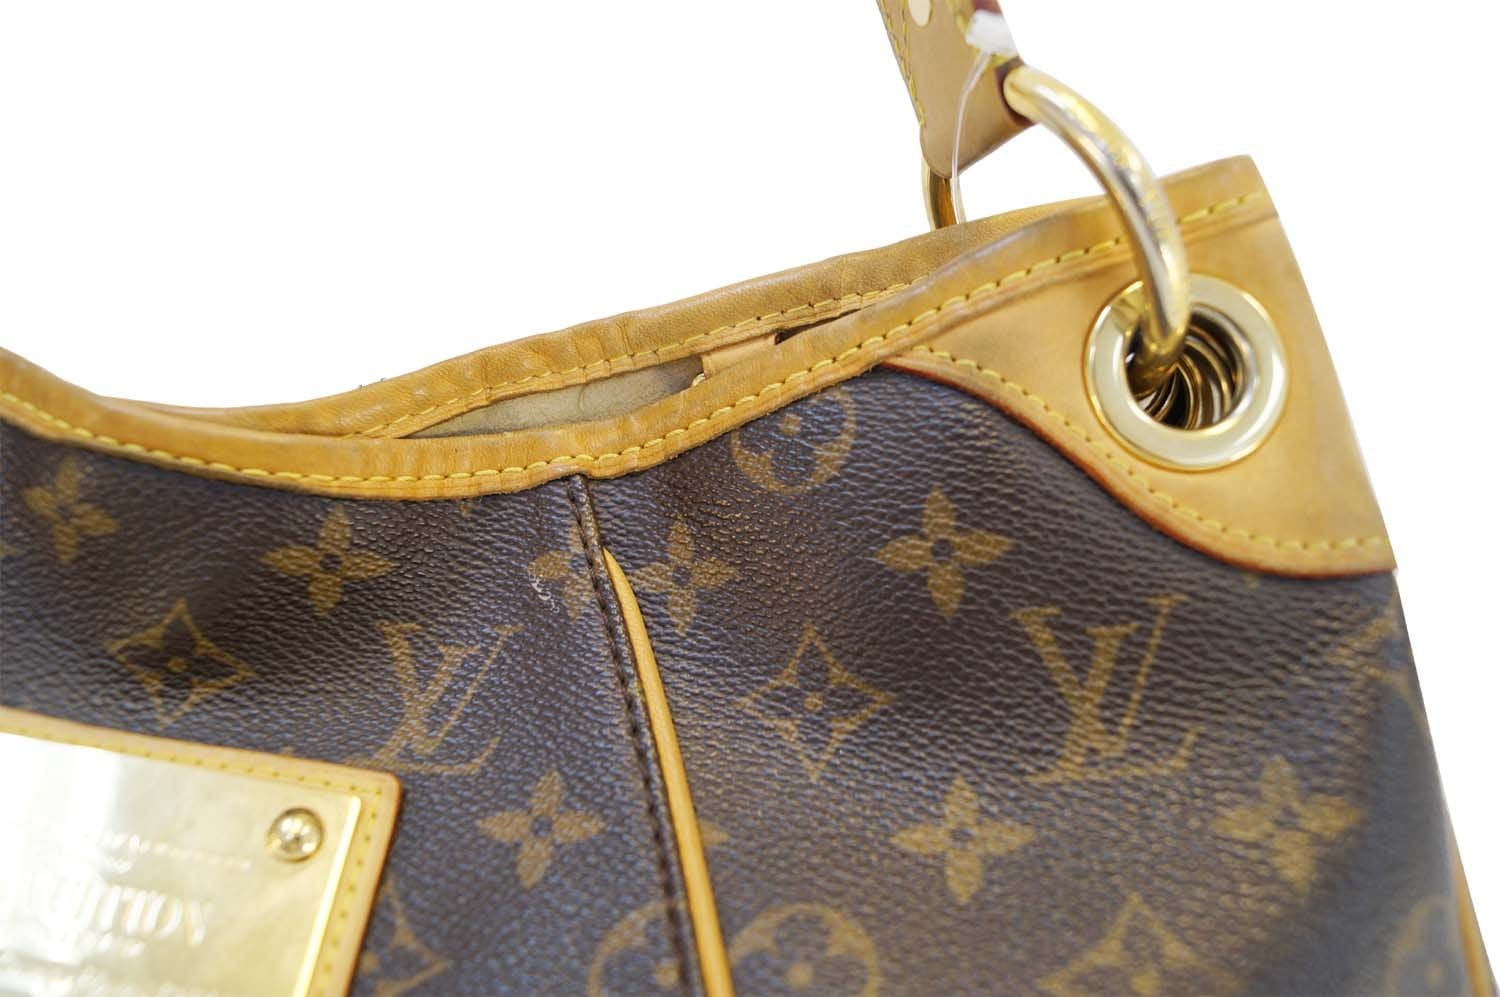 Louis-Vuitton-Monogram-Galliera-PM-Shoulder-Bag-M56382 – dct